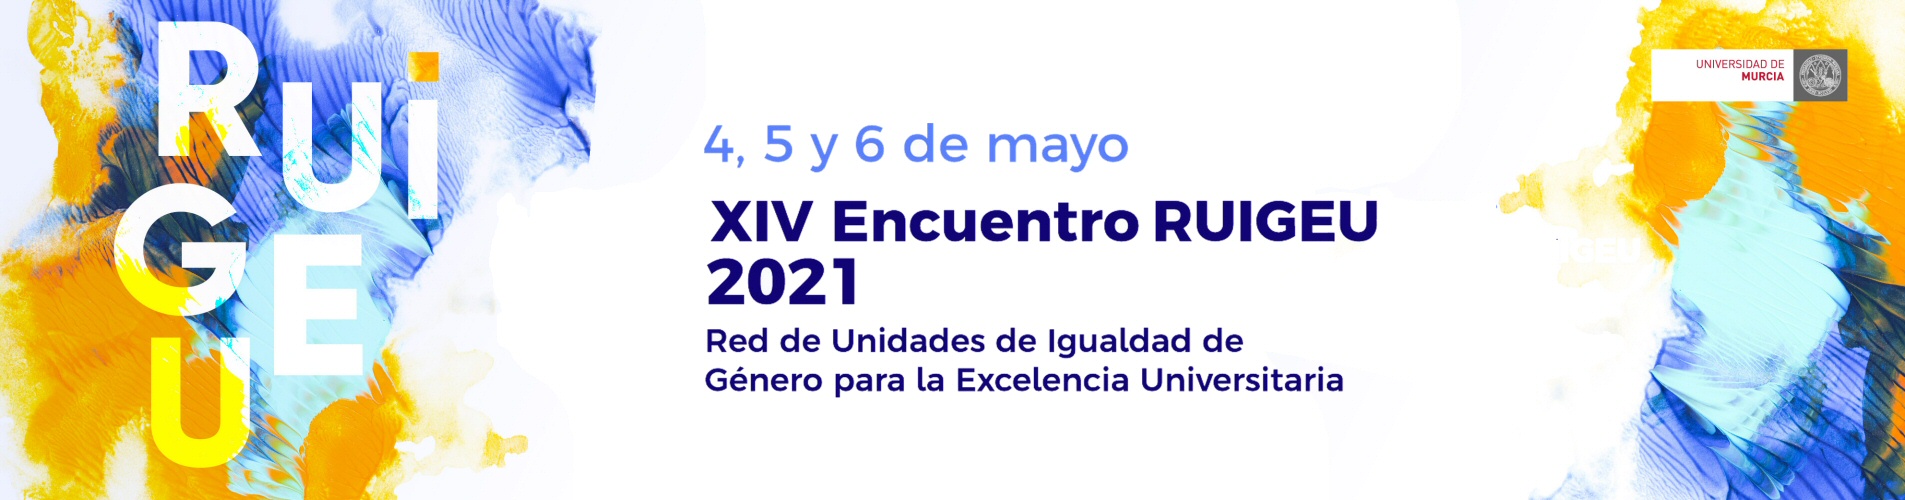 XIV Encuentro de la Red de Unidades de Igualdad de Género para la Excelencia Universitaria (RUIGEU)